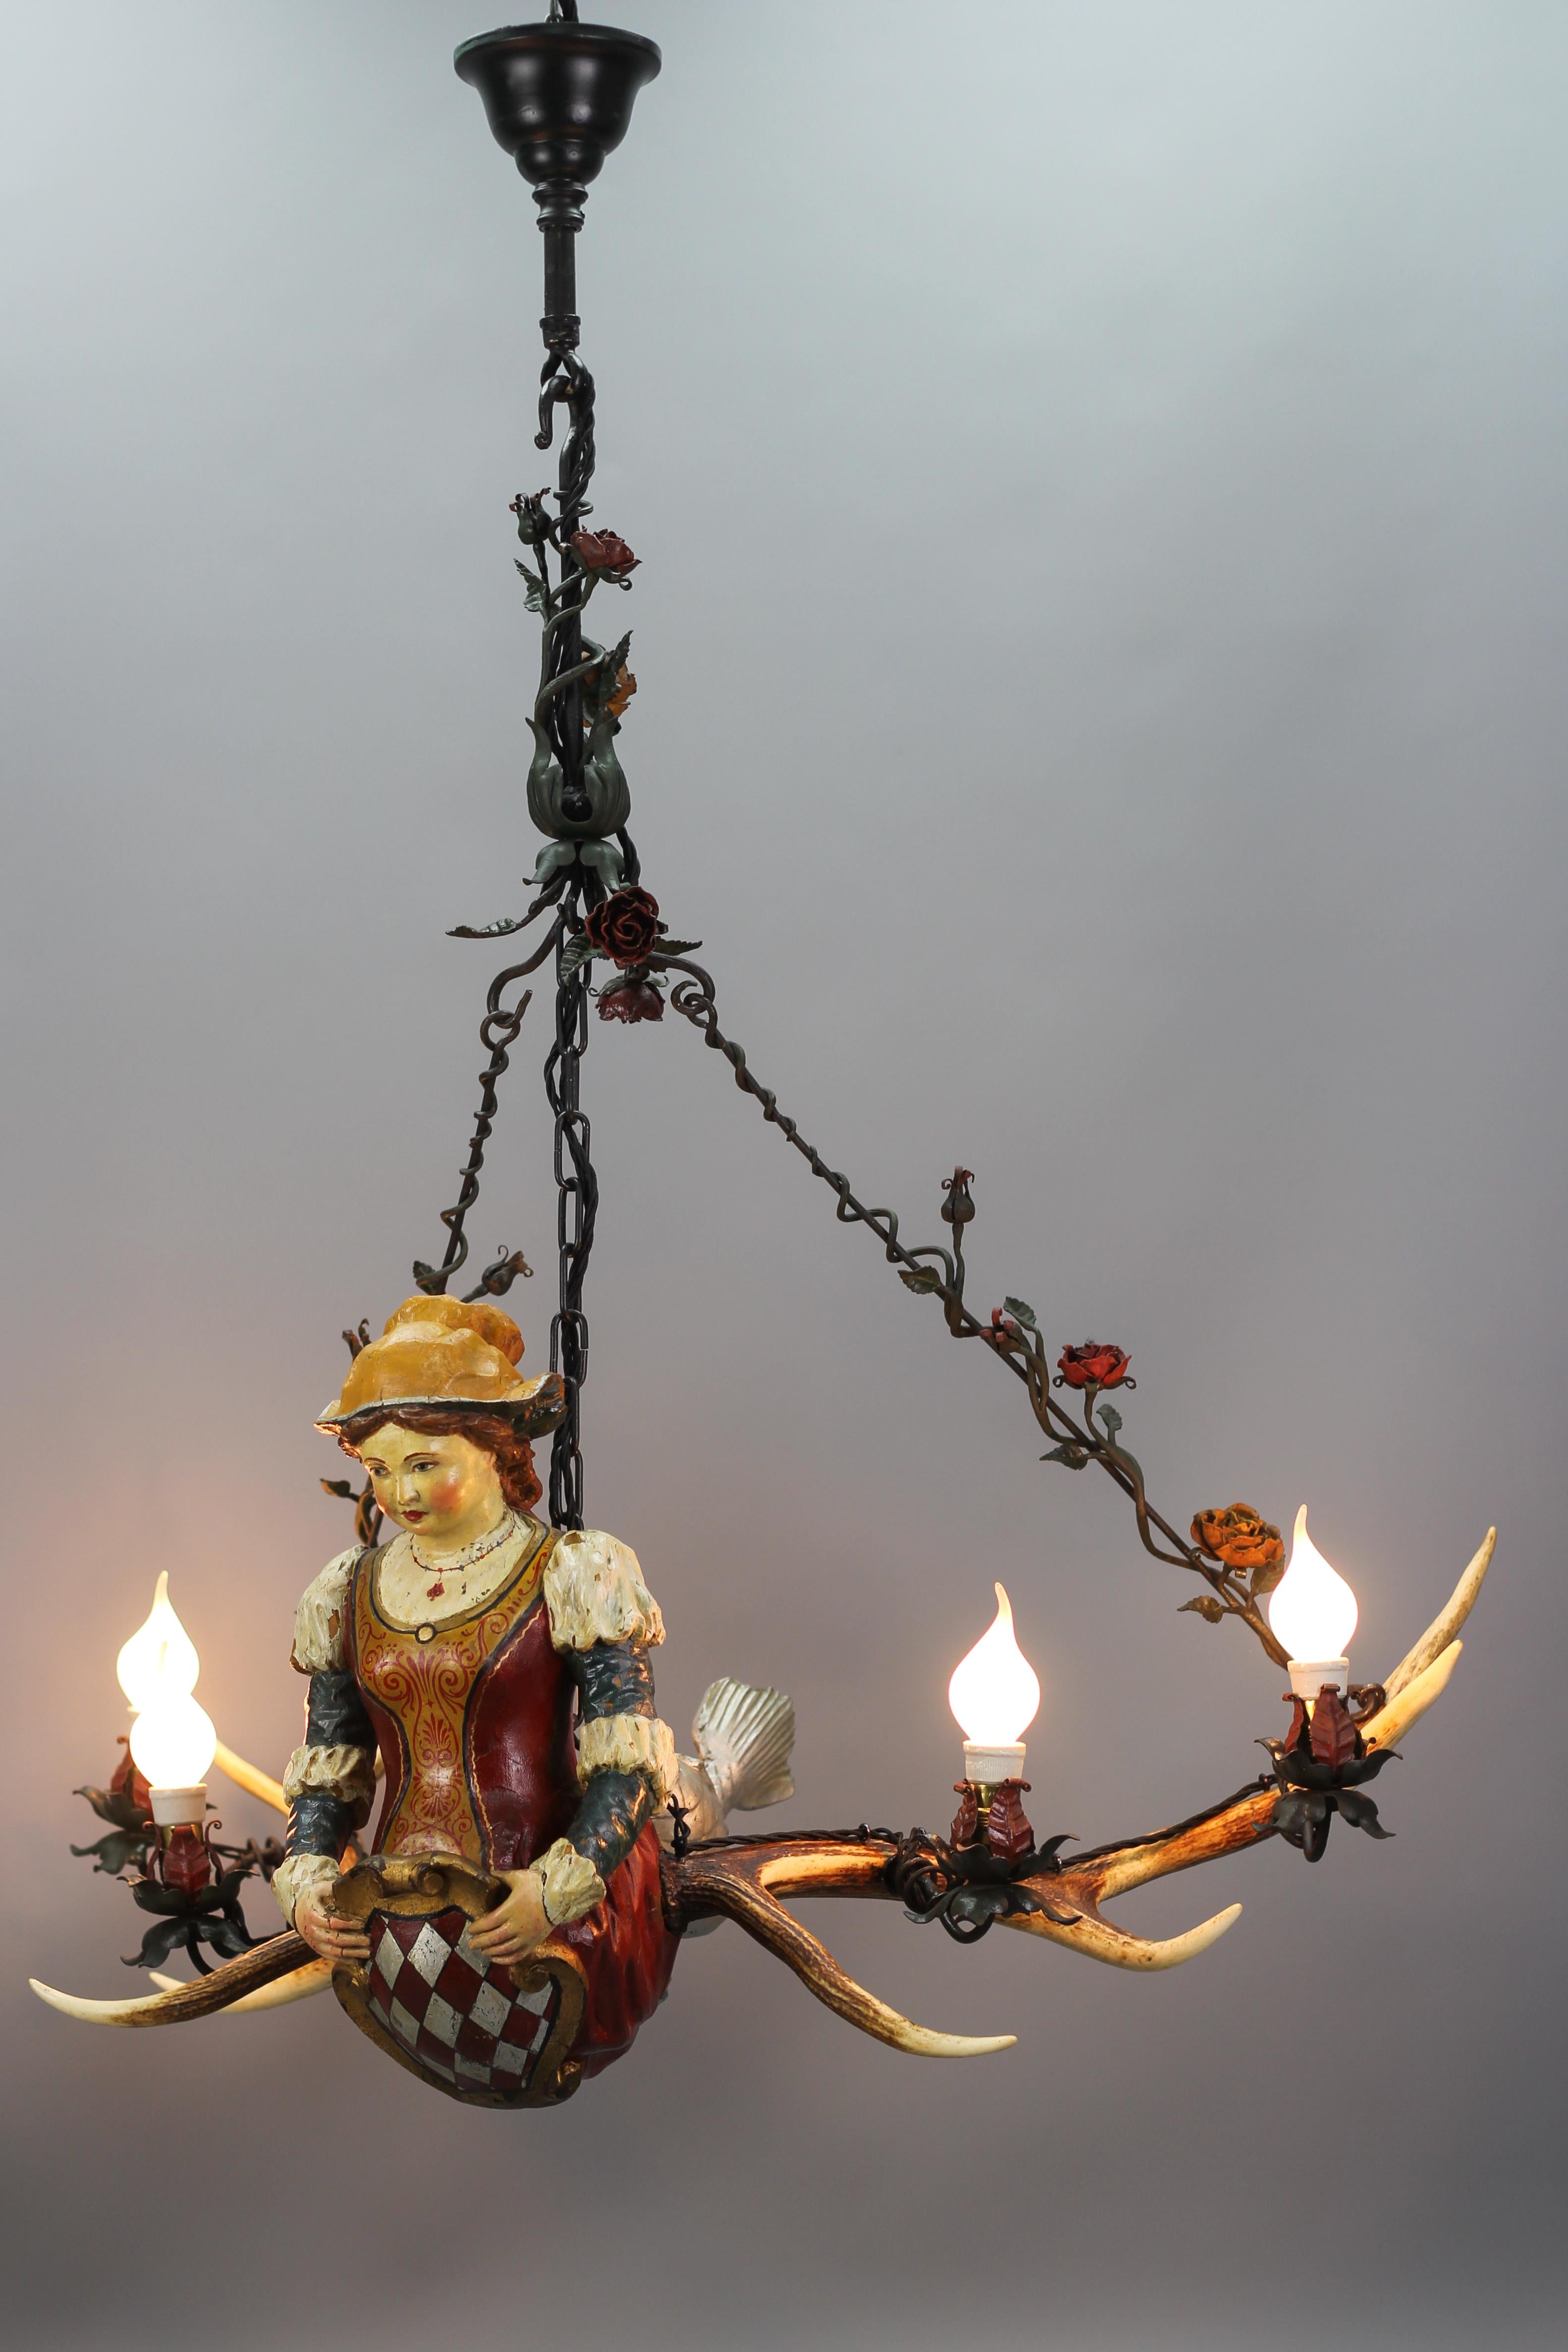 Cet étonnant lustre allemand présente une délicate dame mythique ou sirène, sculptée et peinte à la main en polychromie, avec une queue de poisson écailleuse. L'adorable et belle dame tient un bouclier en forme de cartouche. 
Le luminaire est